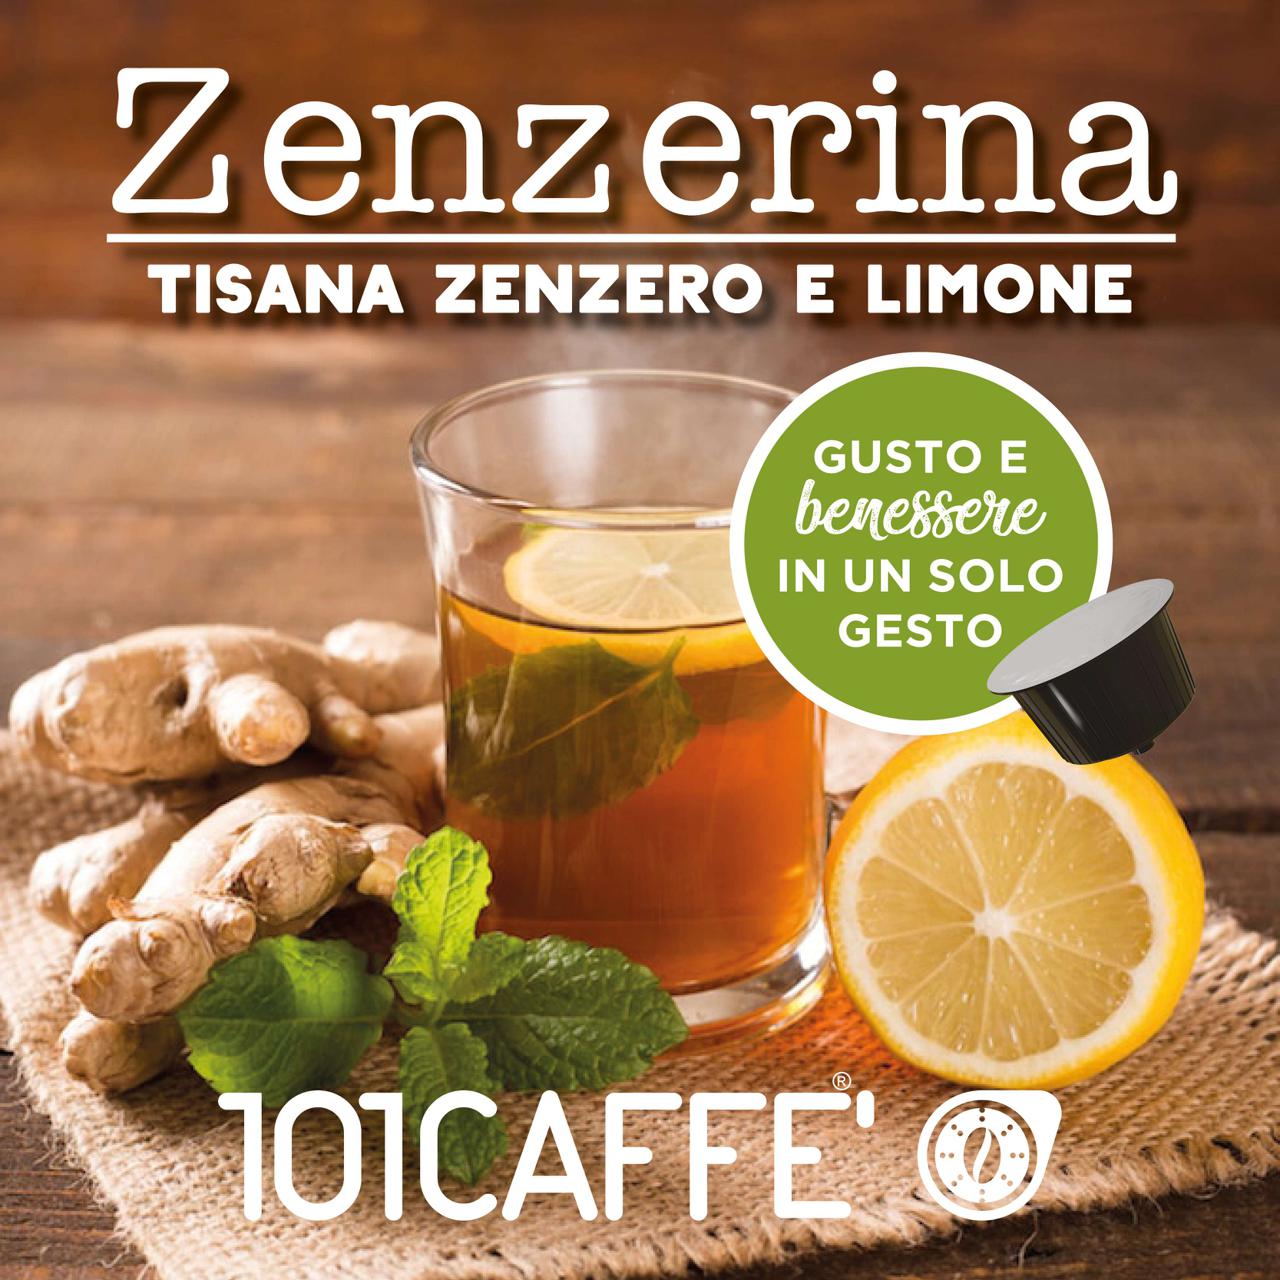 Tisana zenzero e limone - Tisane: gusto e benessere su Tisane